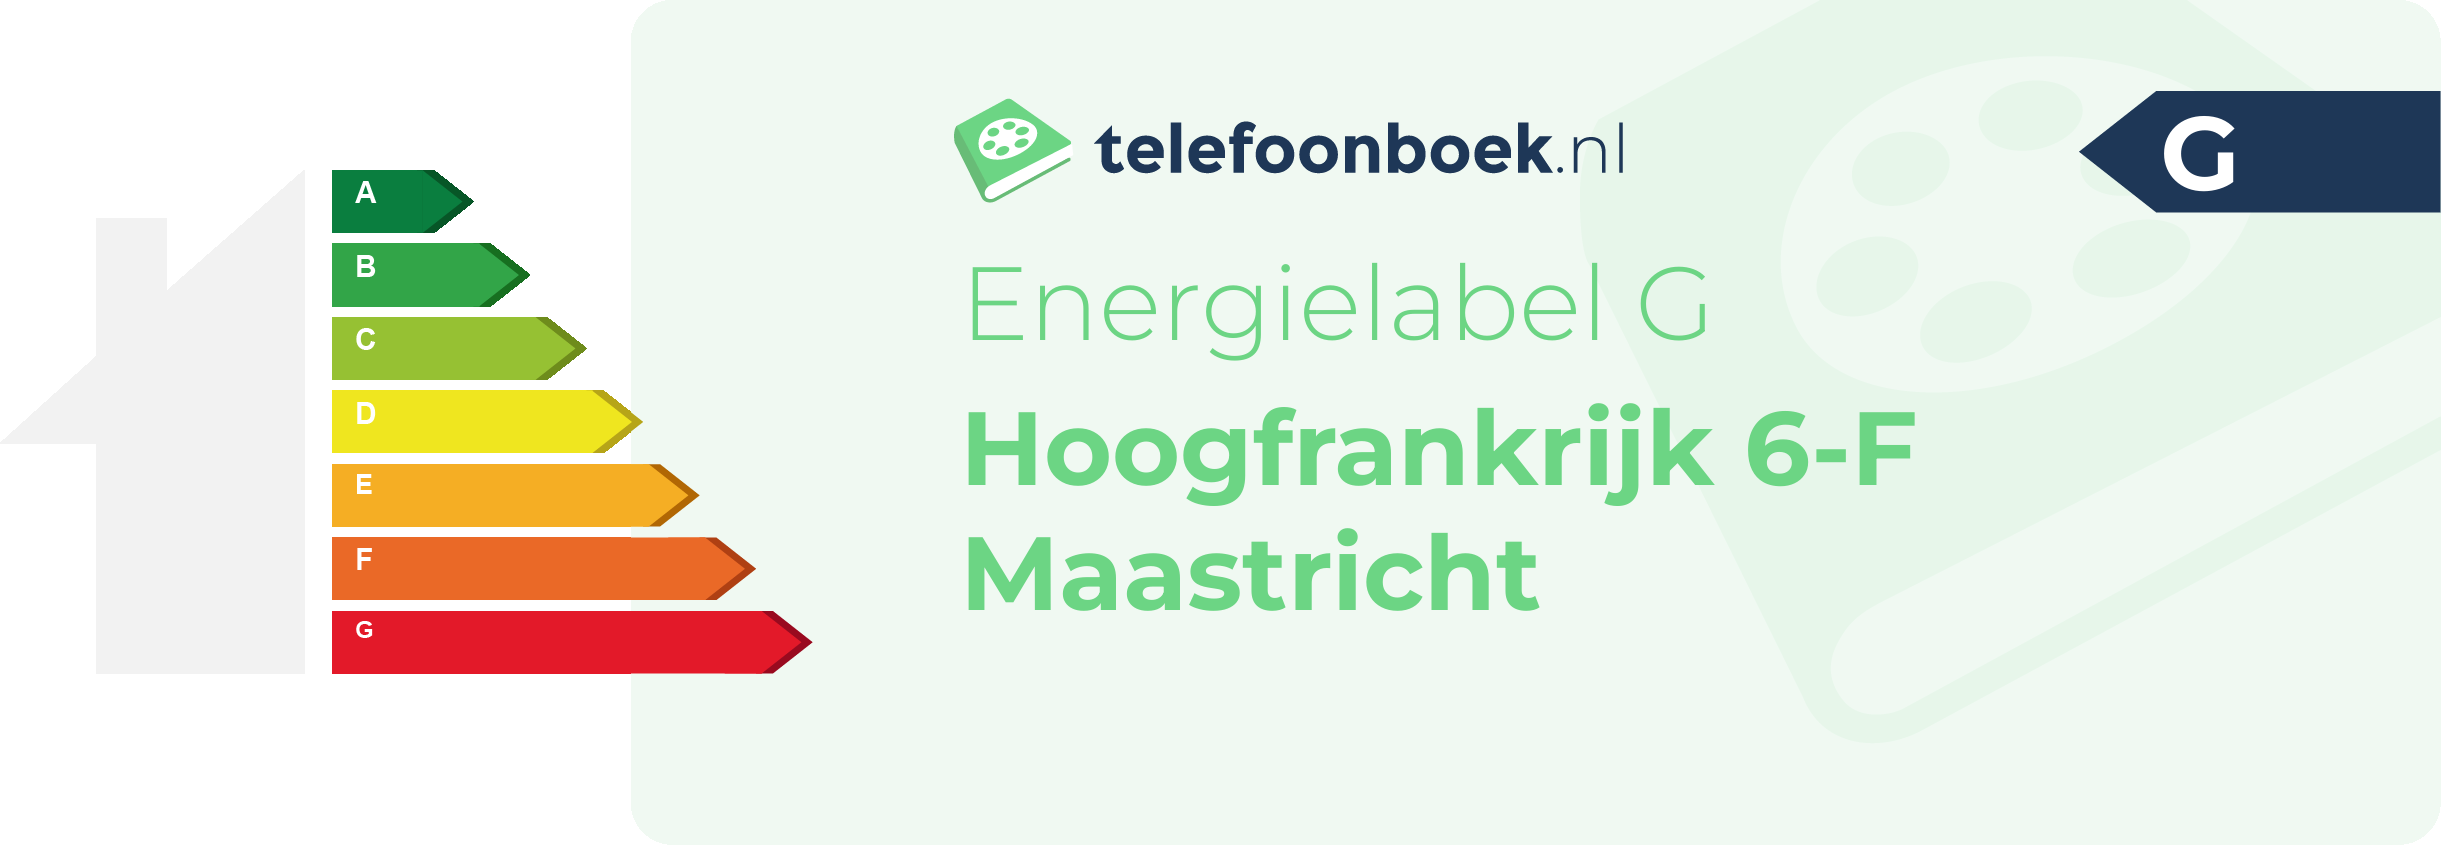 Energielabel Hoogfrankrijk 6-F Maastricht